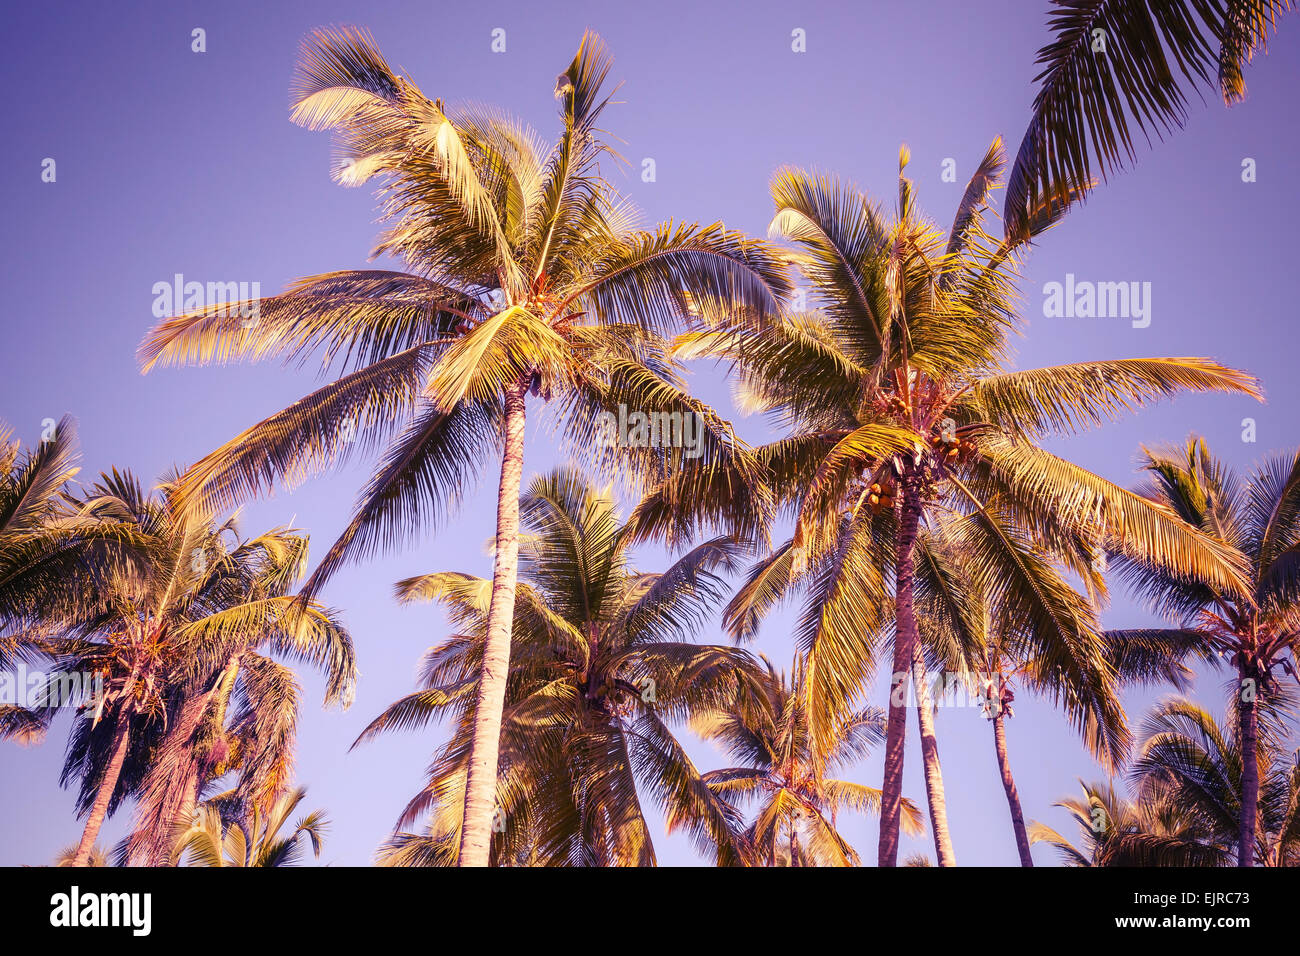 Kokosnuss-Palmen über klaren Himmelshintergrund. Vintage-Stil. Foto mit alten Stil lila getönten Filterwirkung Stockfoto